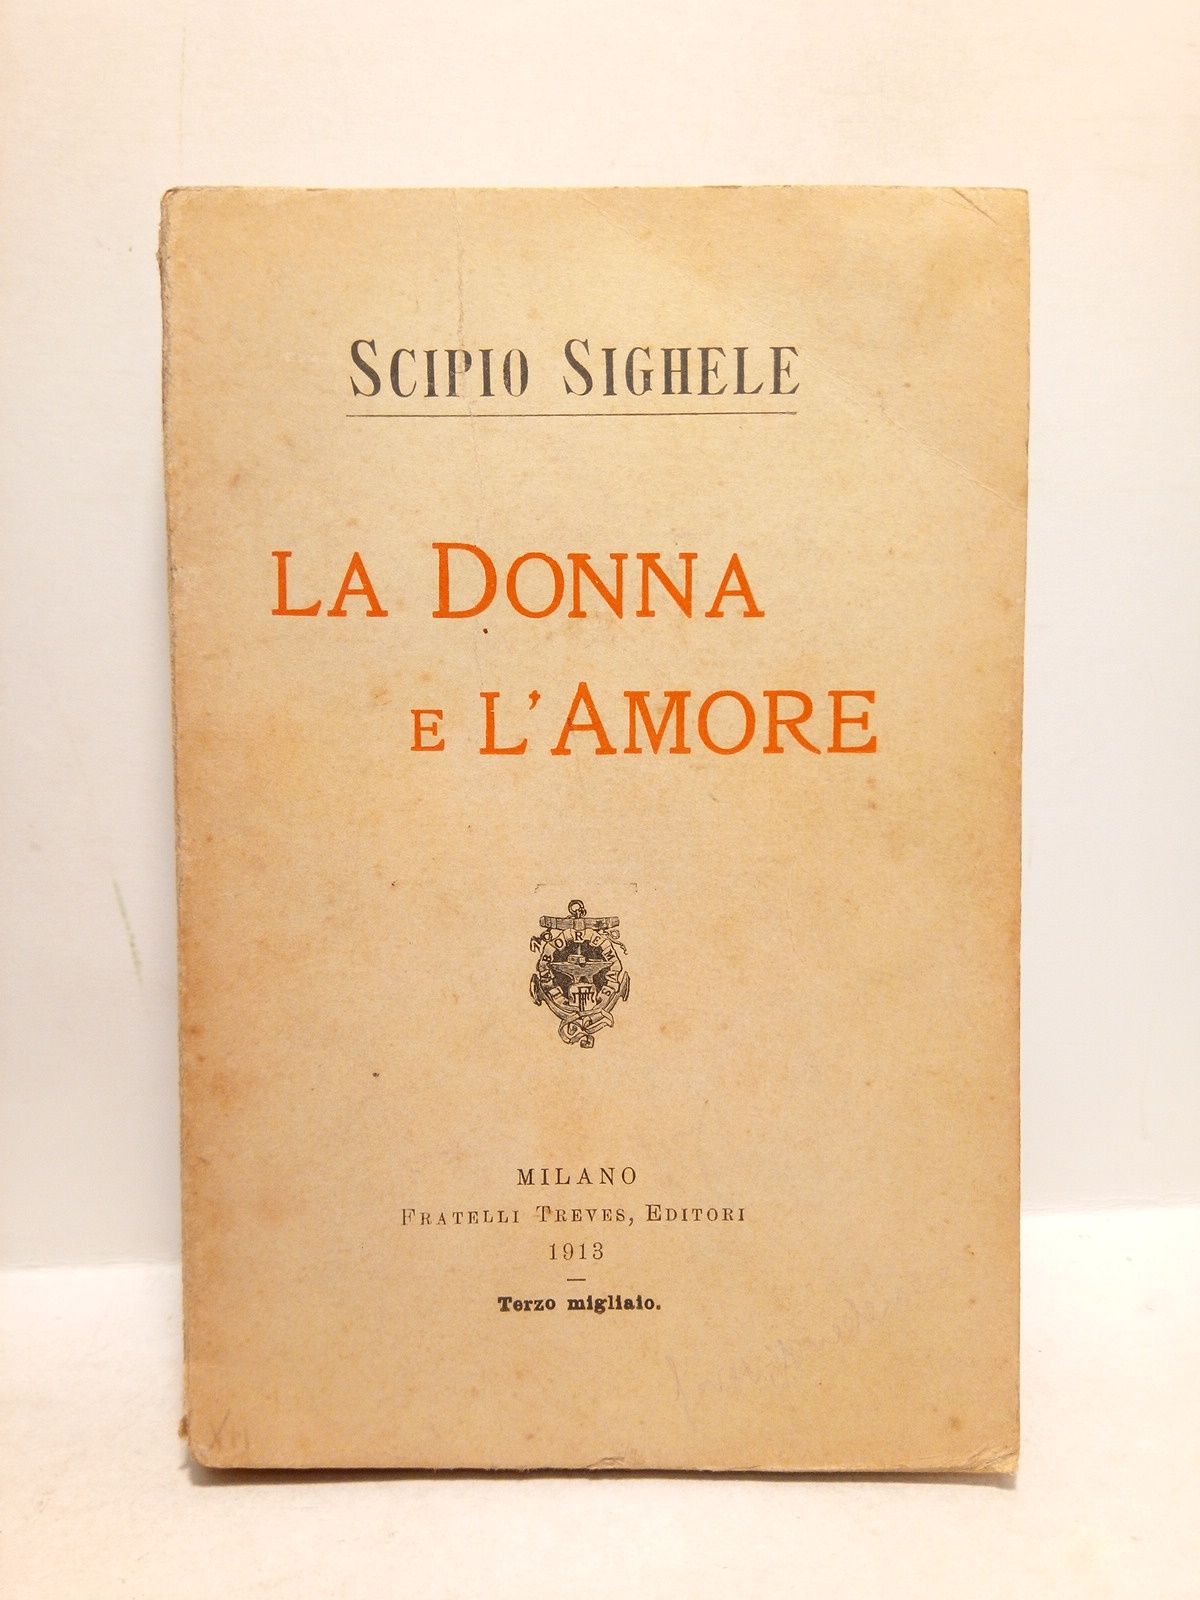 SIGHELE, Scipio - La Donna e l'Amore